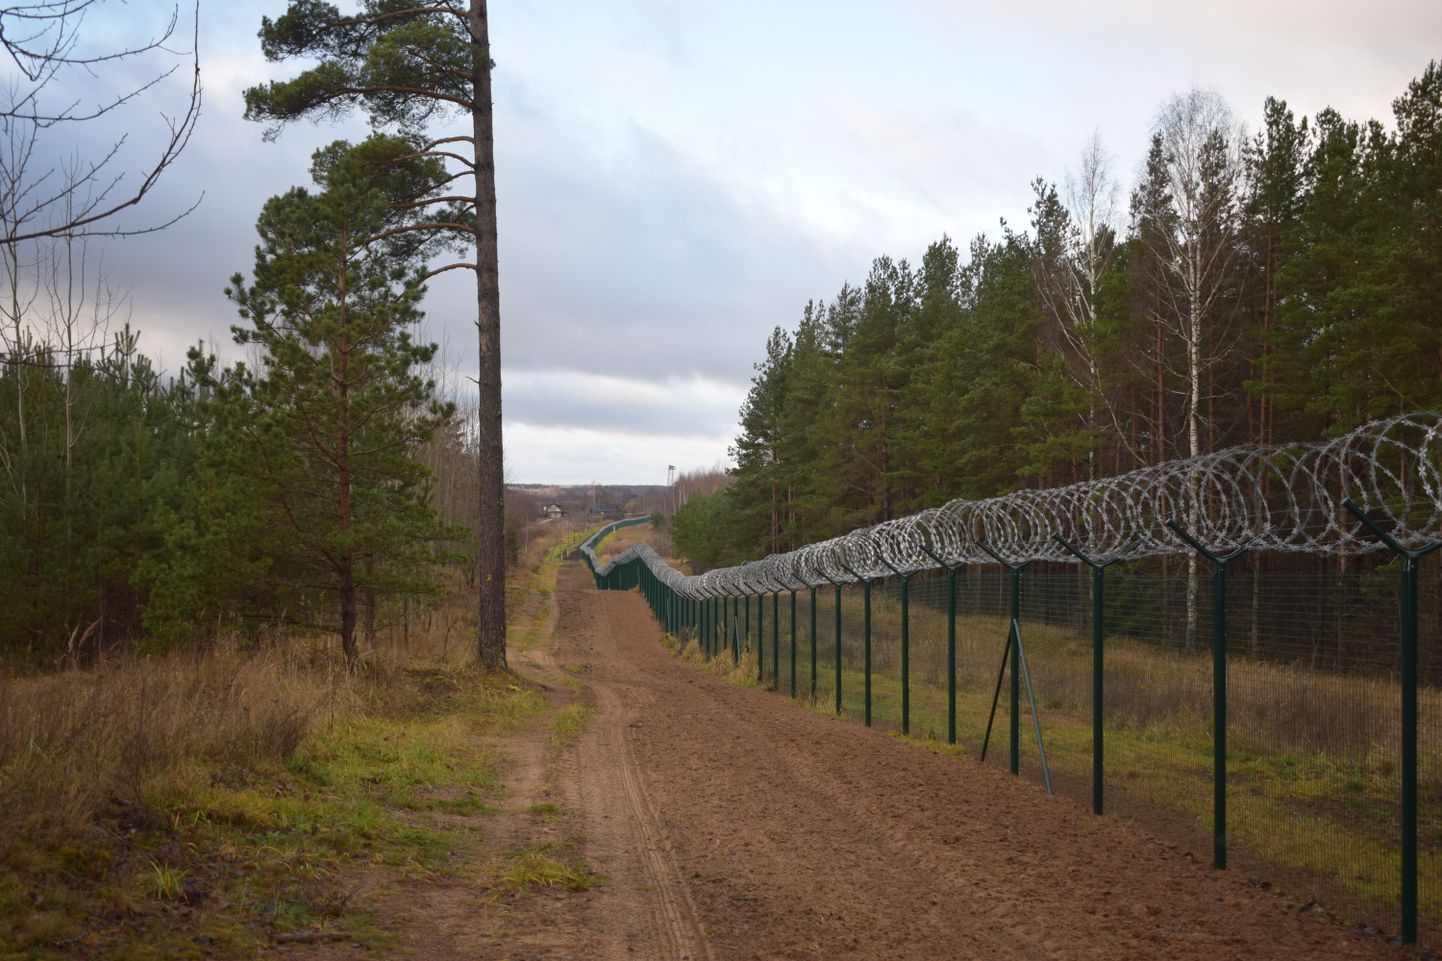 Läti on hoidnud oma poole riigipiirist puhtana, lisaks rajanud liivase kontrollriba illegaalsete ületuste tuvastamiseks. Vene pool on aga lastud võssa kasvada.